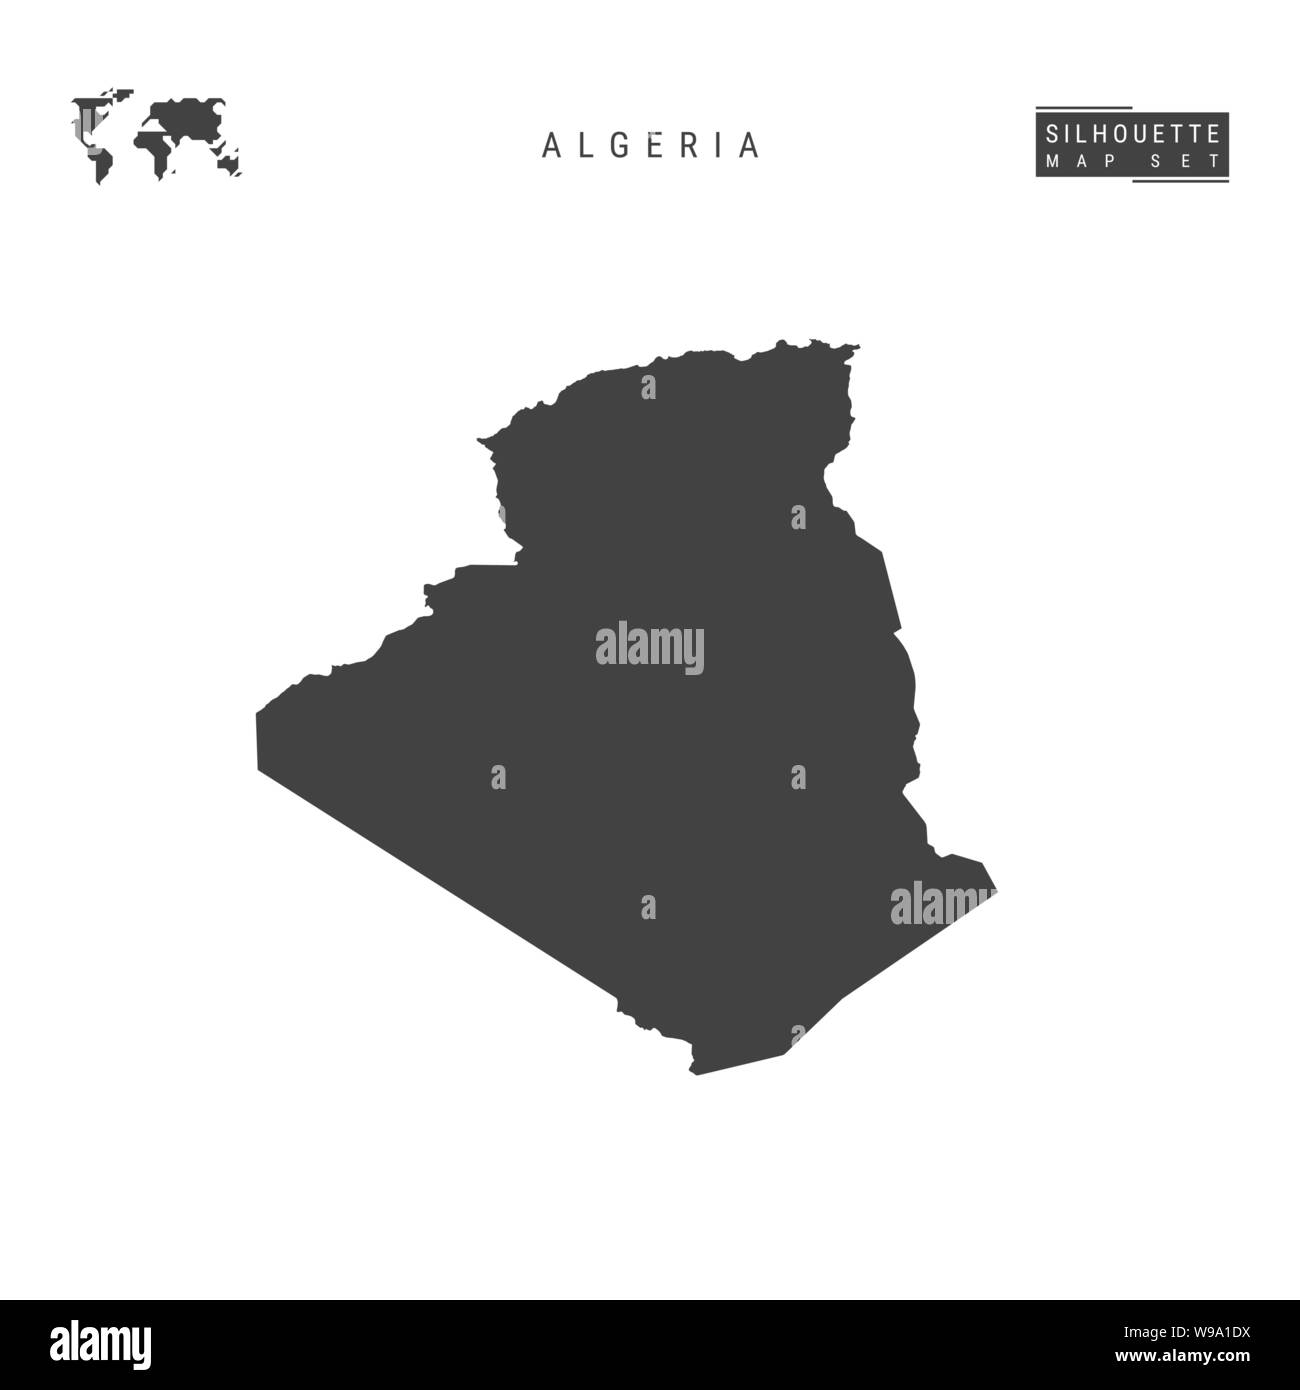 Algerien leeren Vektor Karte isoliert auf weißem Hintergrund. High-Detailed schwarze Silhouette Karte von Algerien. Stock Vektor